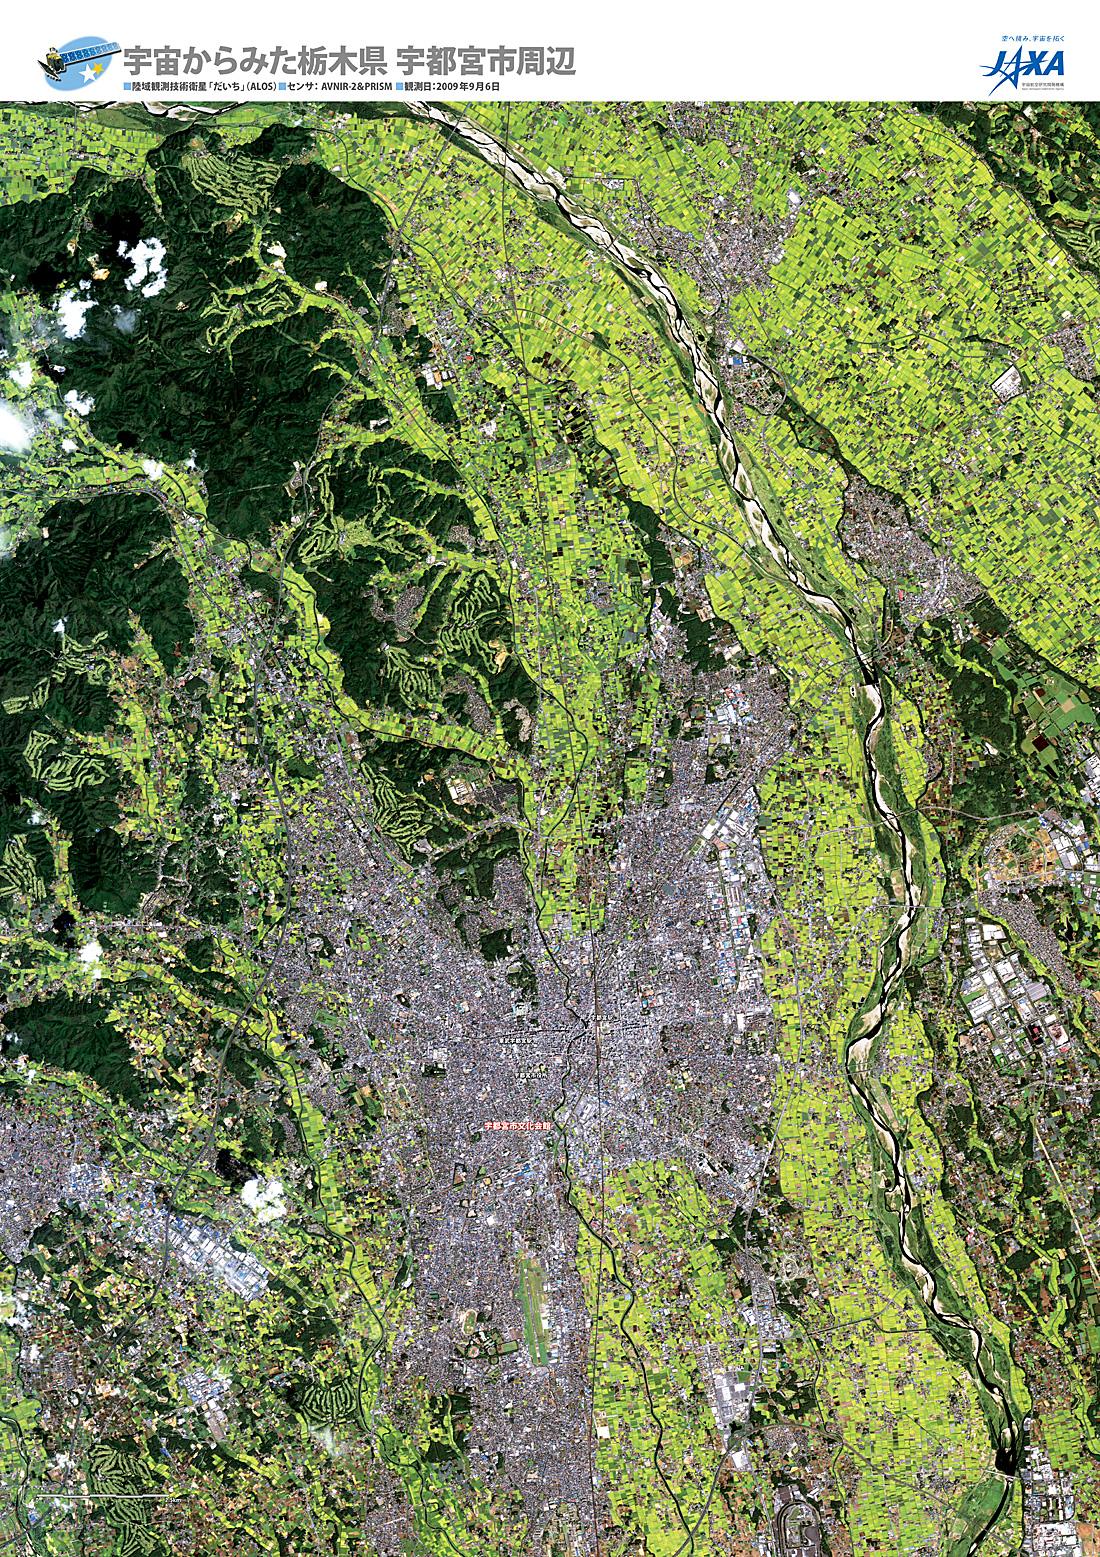 だいちから見た日本の都市 宇都宮市周辺:衛星画像（ポスター仕上げ）